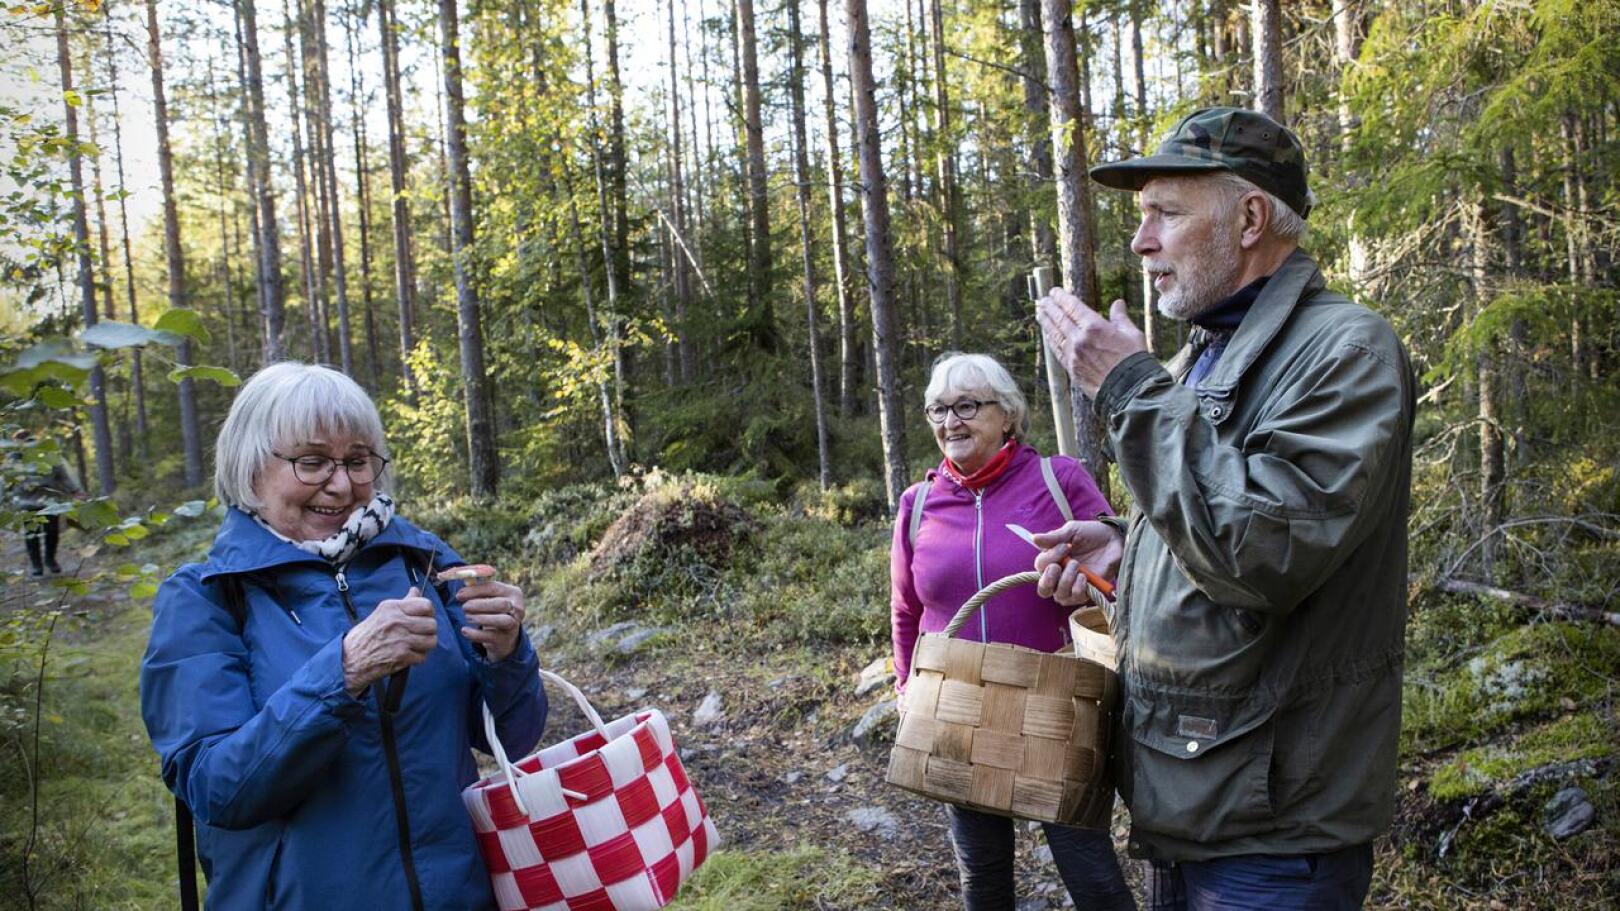 Sieniseuran puheenjohtaja Kenneth Bergroth opastaa sienten tunnistuksessa.– Sieniseuran mukana on turvallista tunnistaa sieniä ja kulkea metsässä, Pirkko-liisa Rahja ja Majlis Känsäkangas. 